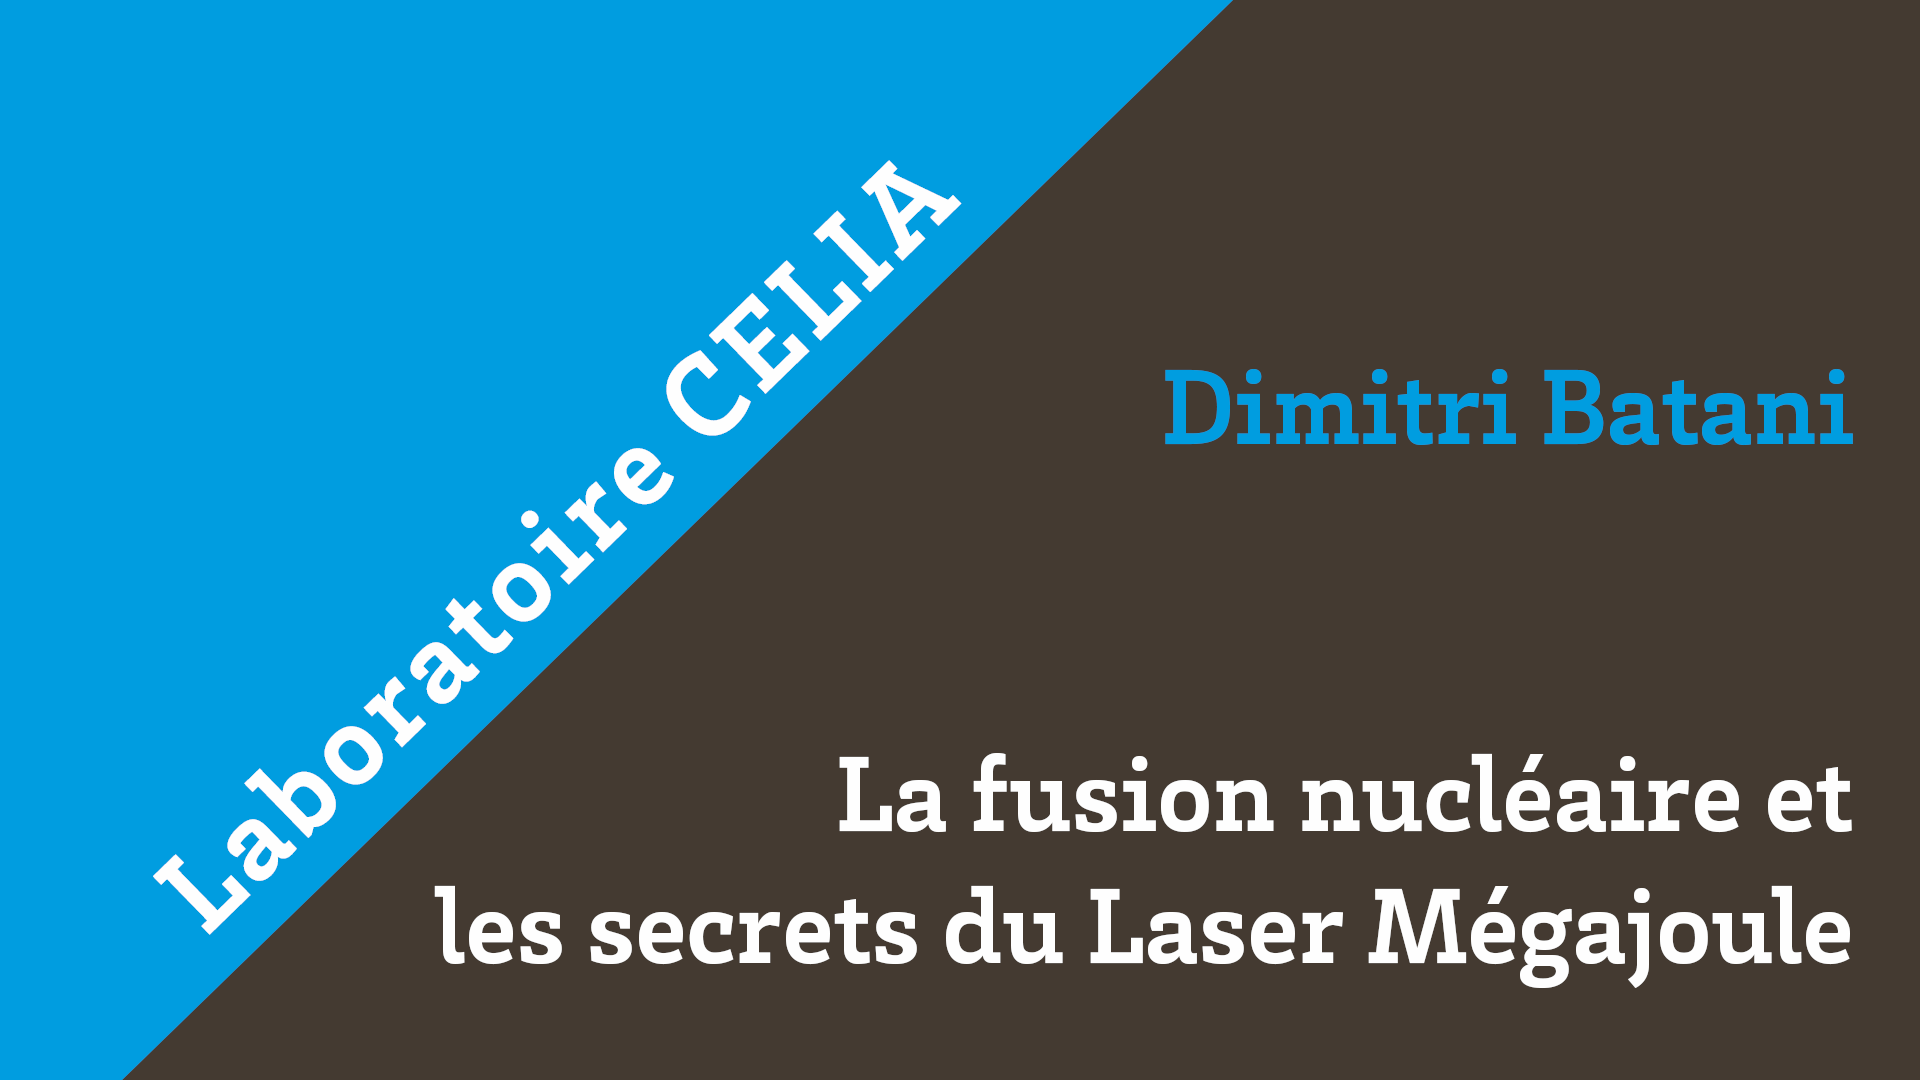 La fusion nucléaire et les secrets du laser Mégajoule